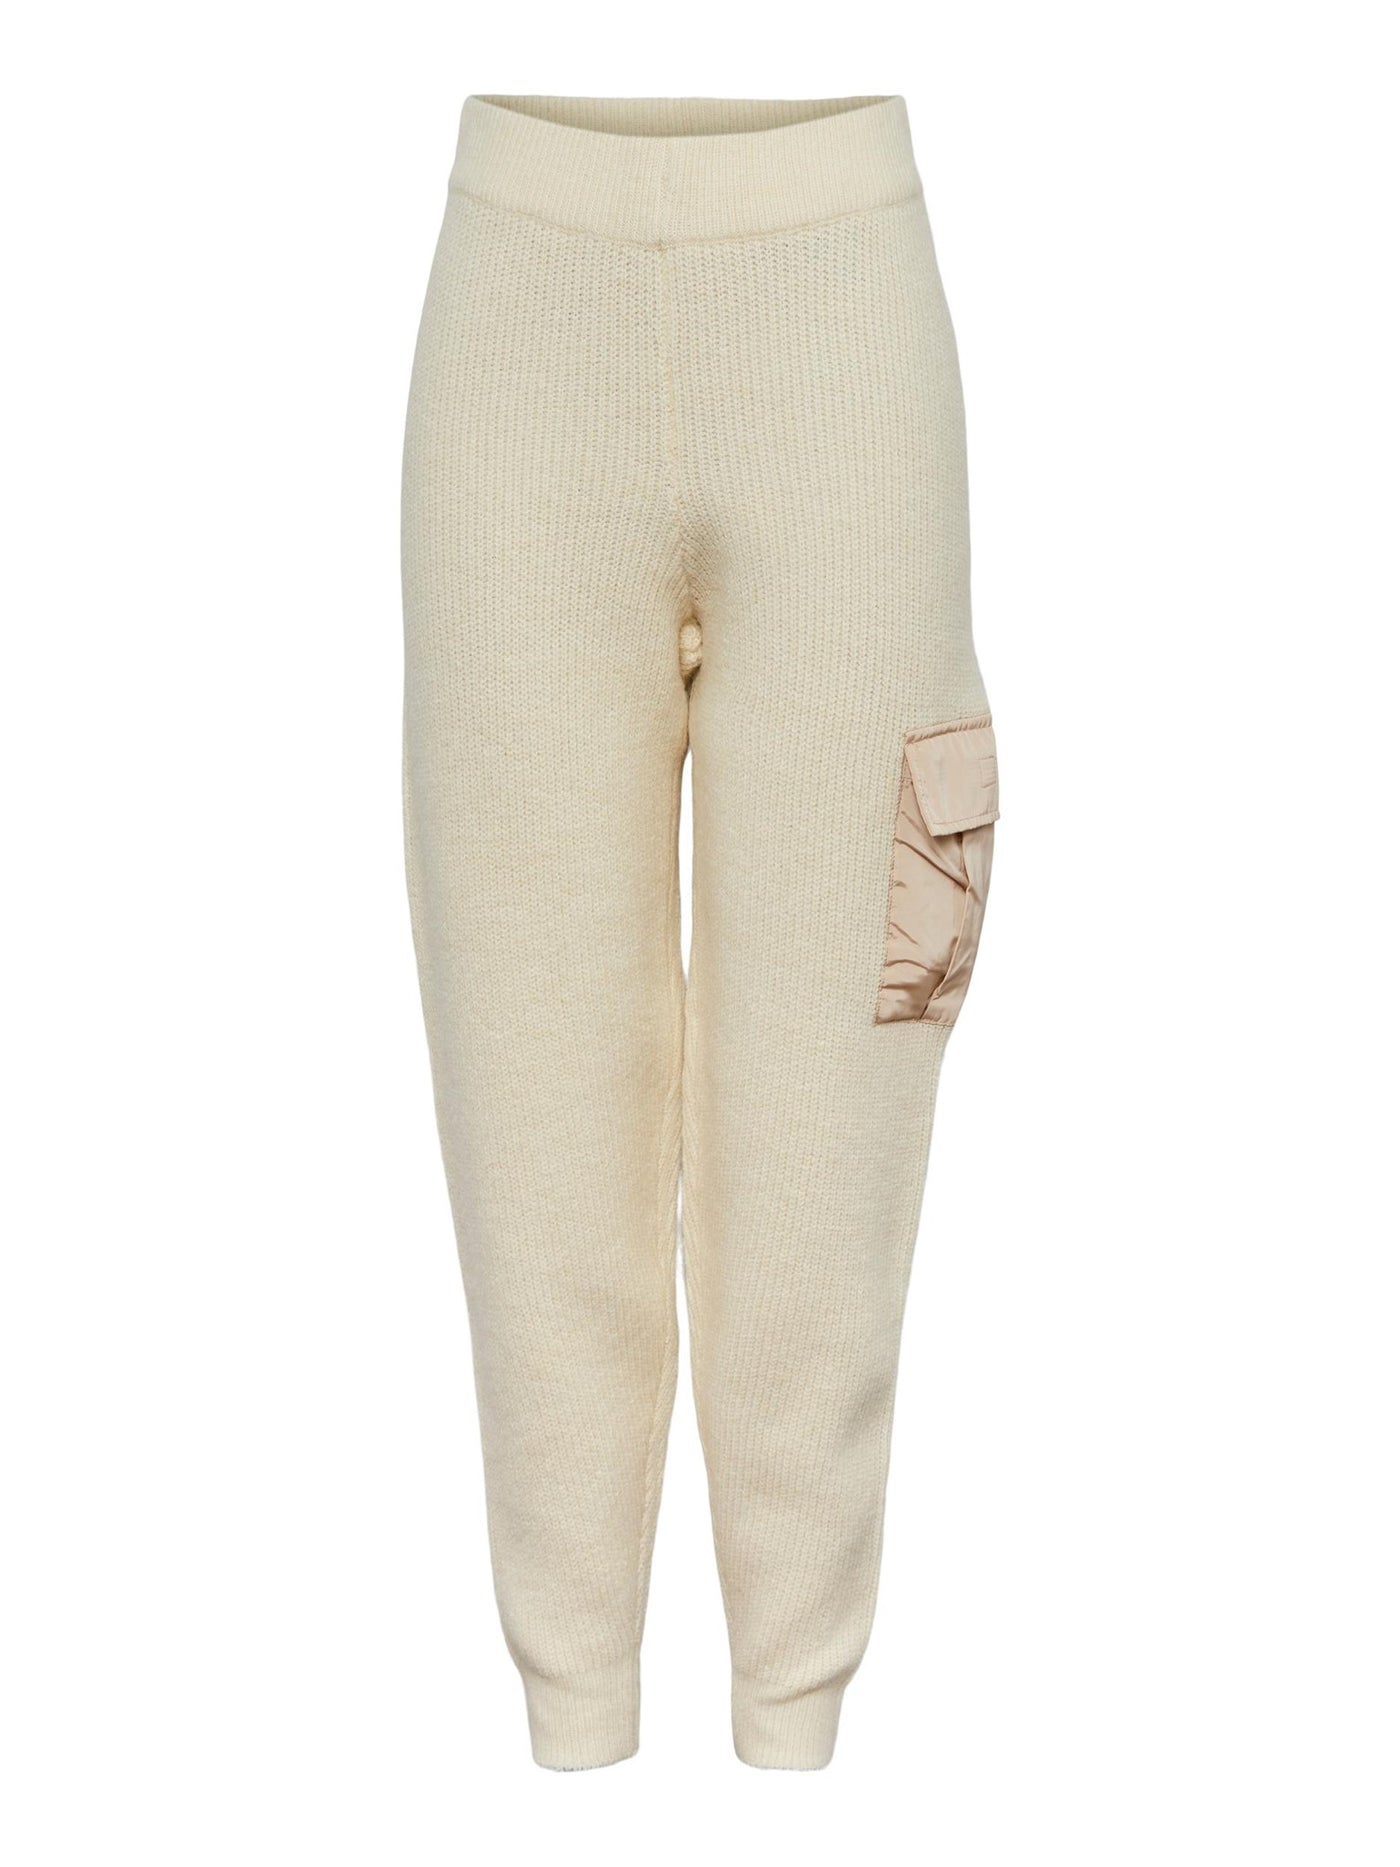 Naura Knit Pants - Antique White - PIECES - Vit